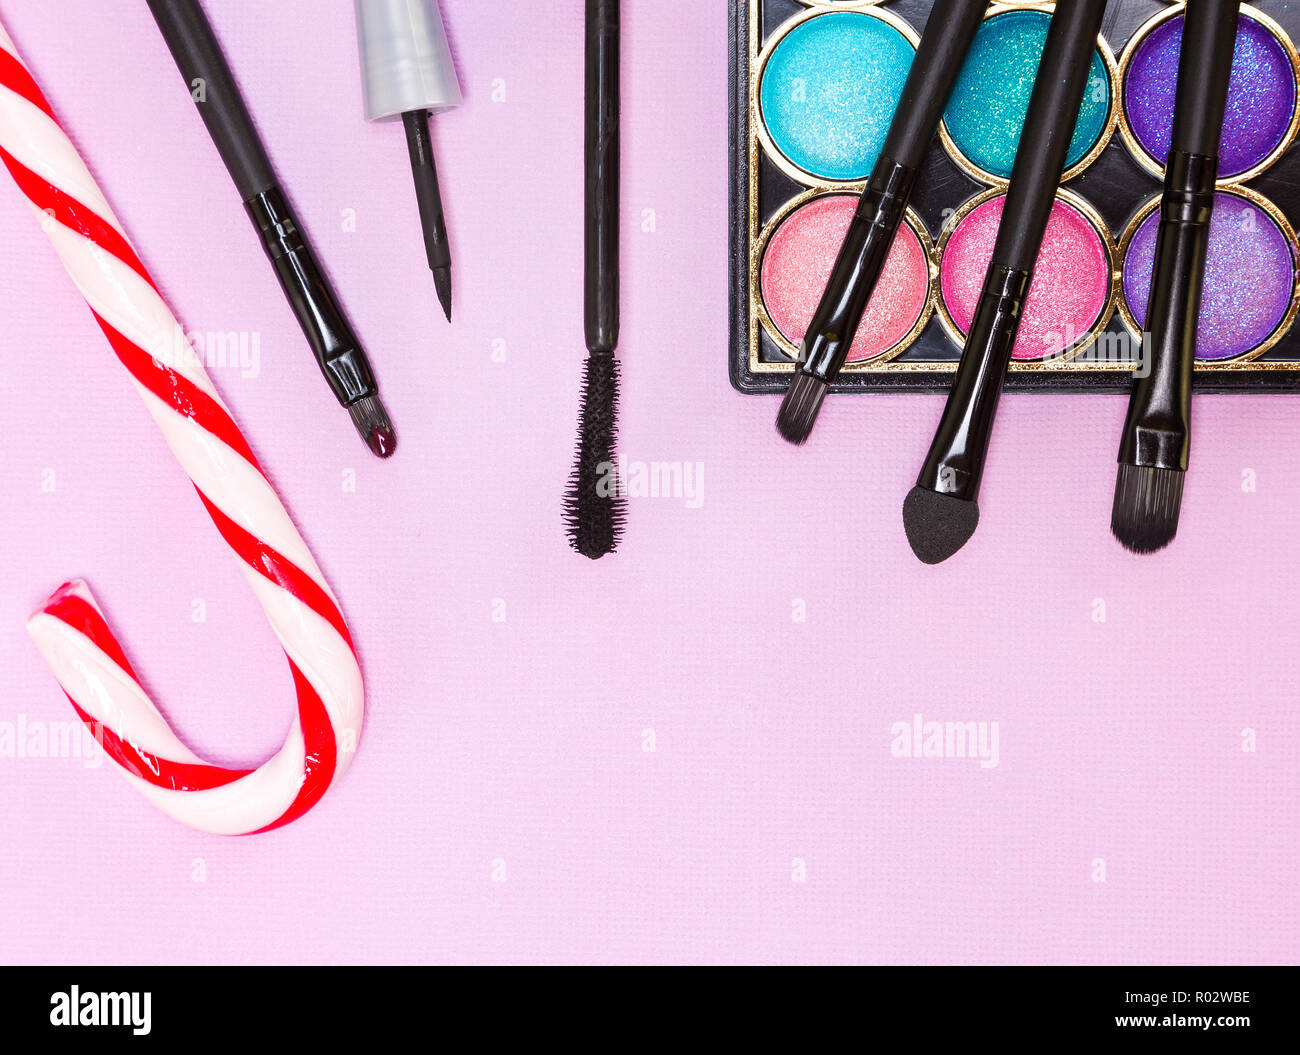 Weihnachten Make-up Kosmetik. Helle farbe Glitzer Lidschatten, schwarzer Eyeliner, Mascara, Lipgloss, Make up Pinsel und Applikator mit Zuckerstange auf Stockfoto